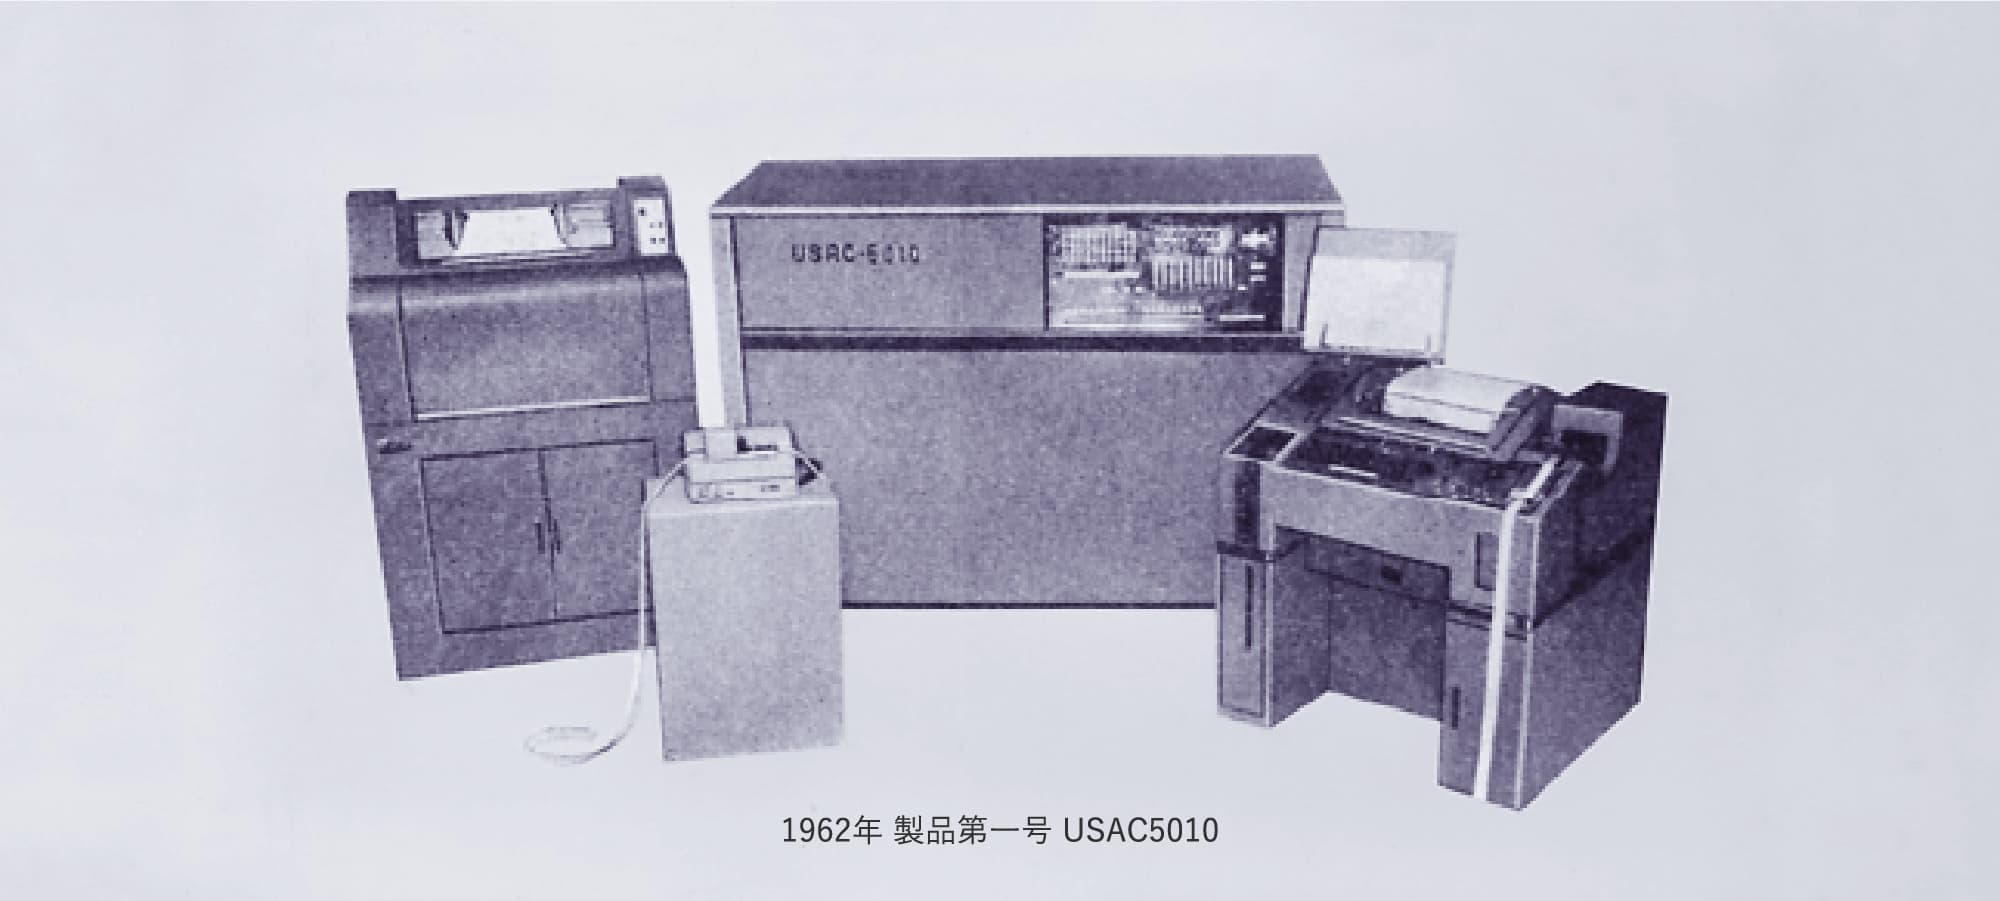 1962年 製品第一号 USAC5010